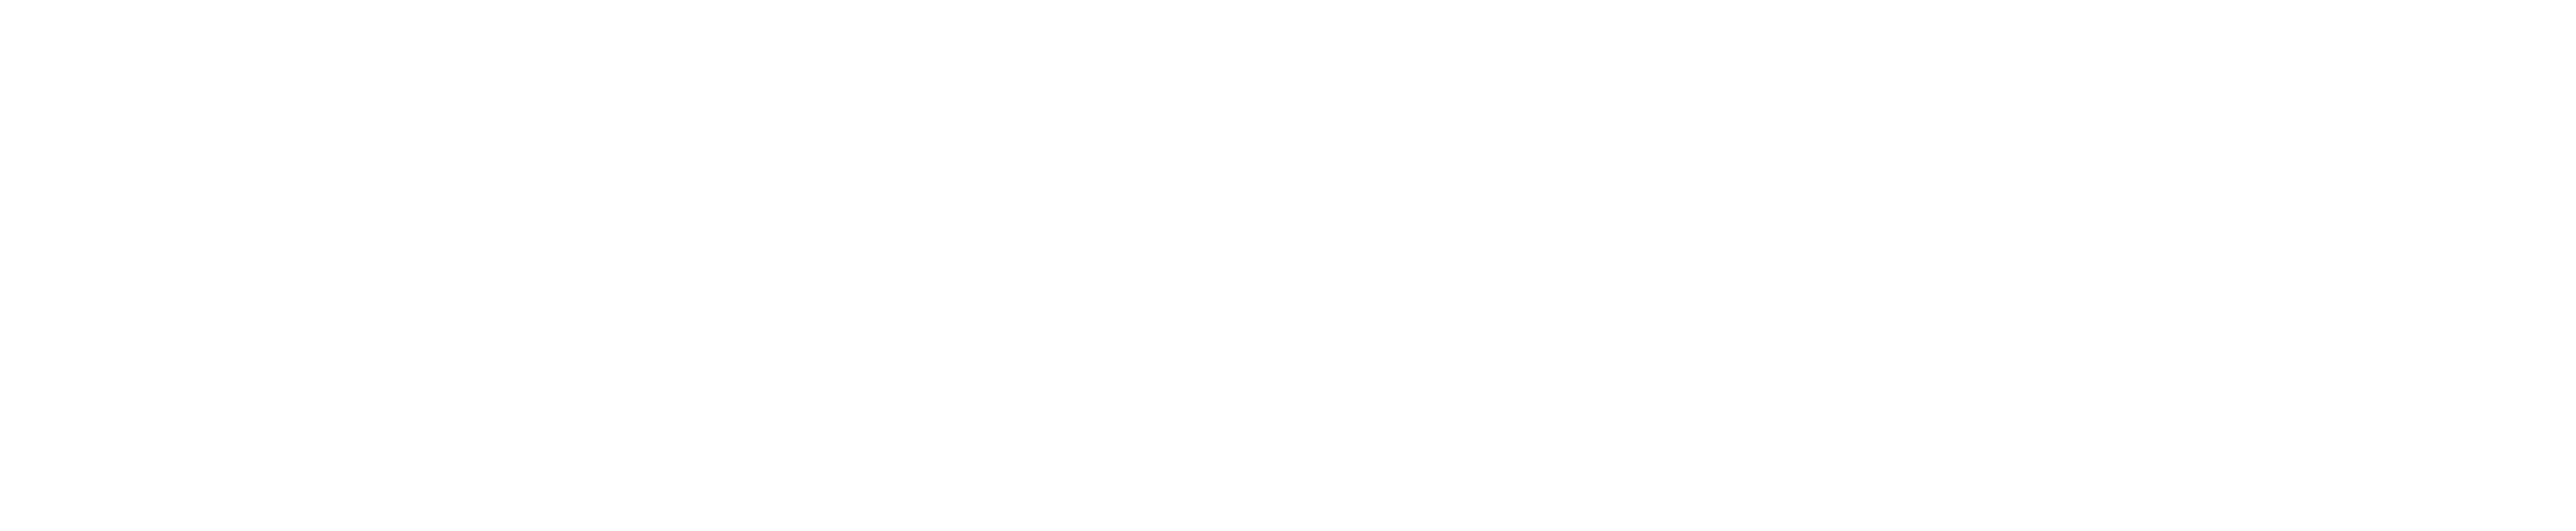 Mittal Siddhi - White logo